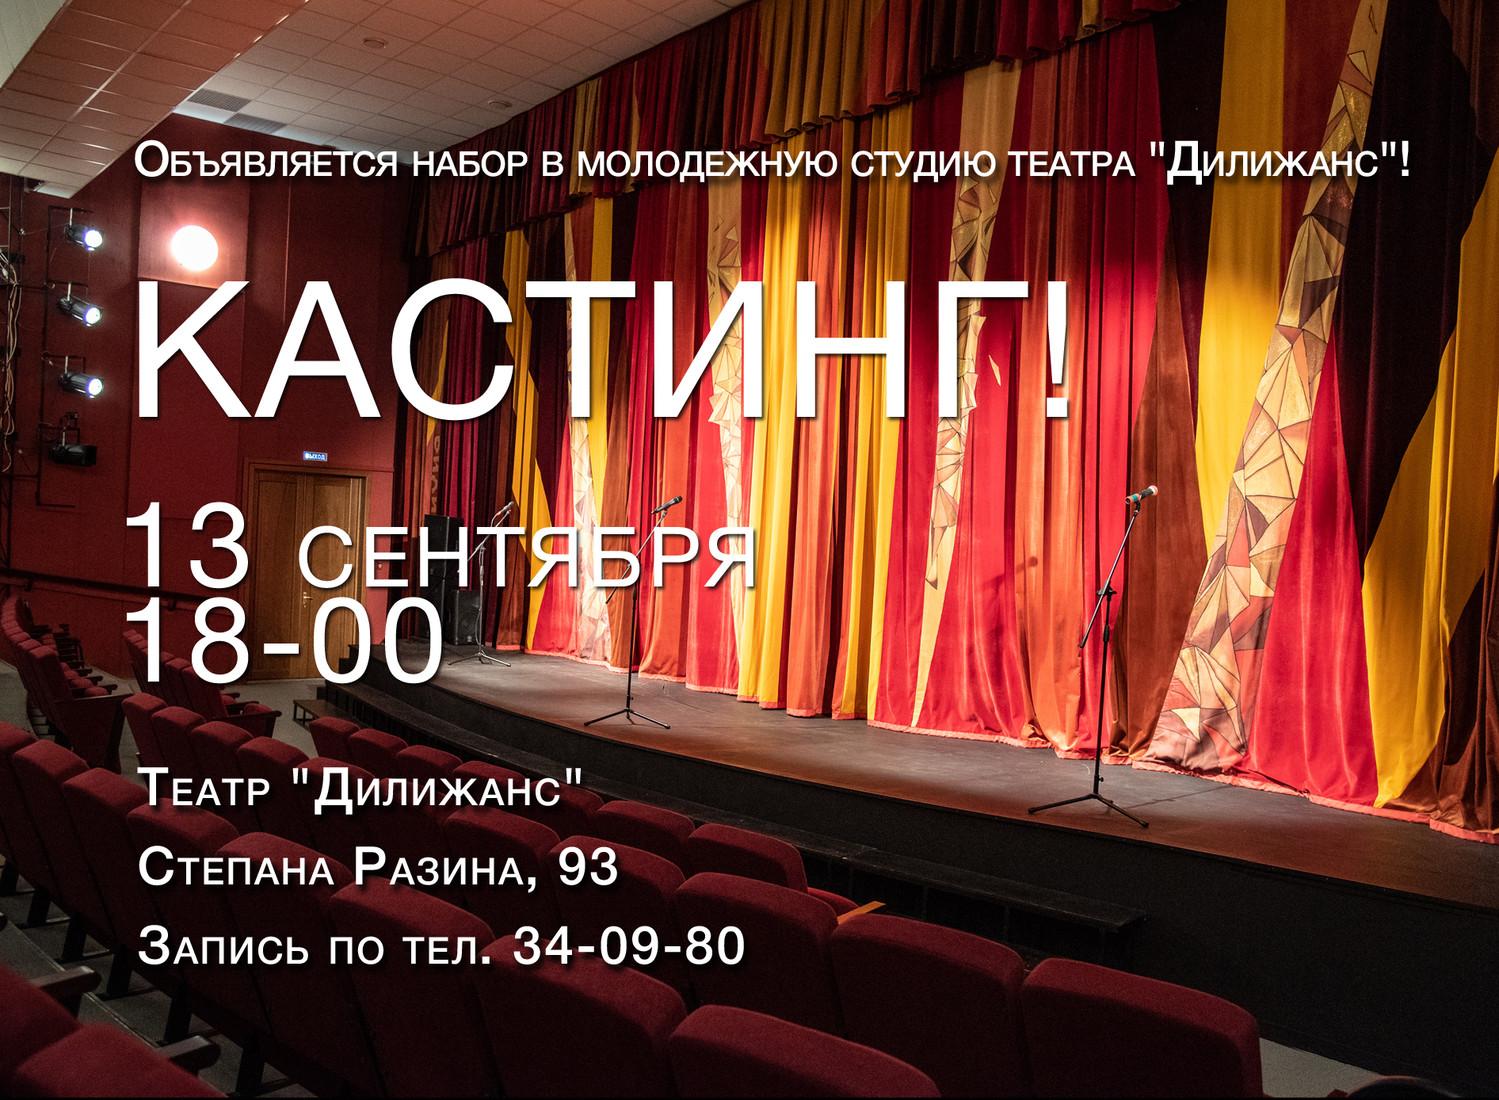 13 сентября состоится КАСТИНГ в молодёжную театральную студию